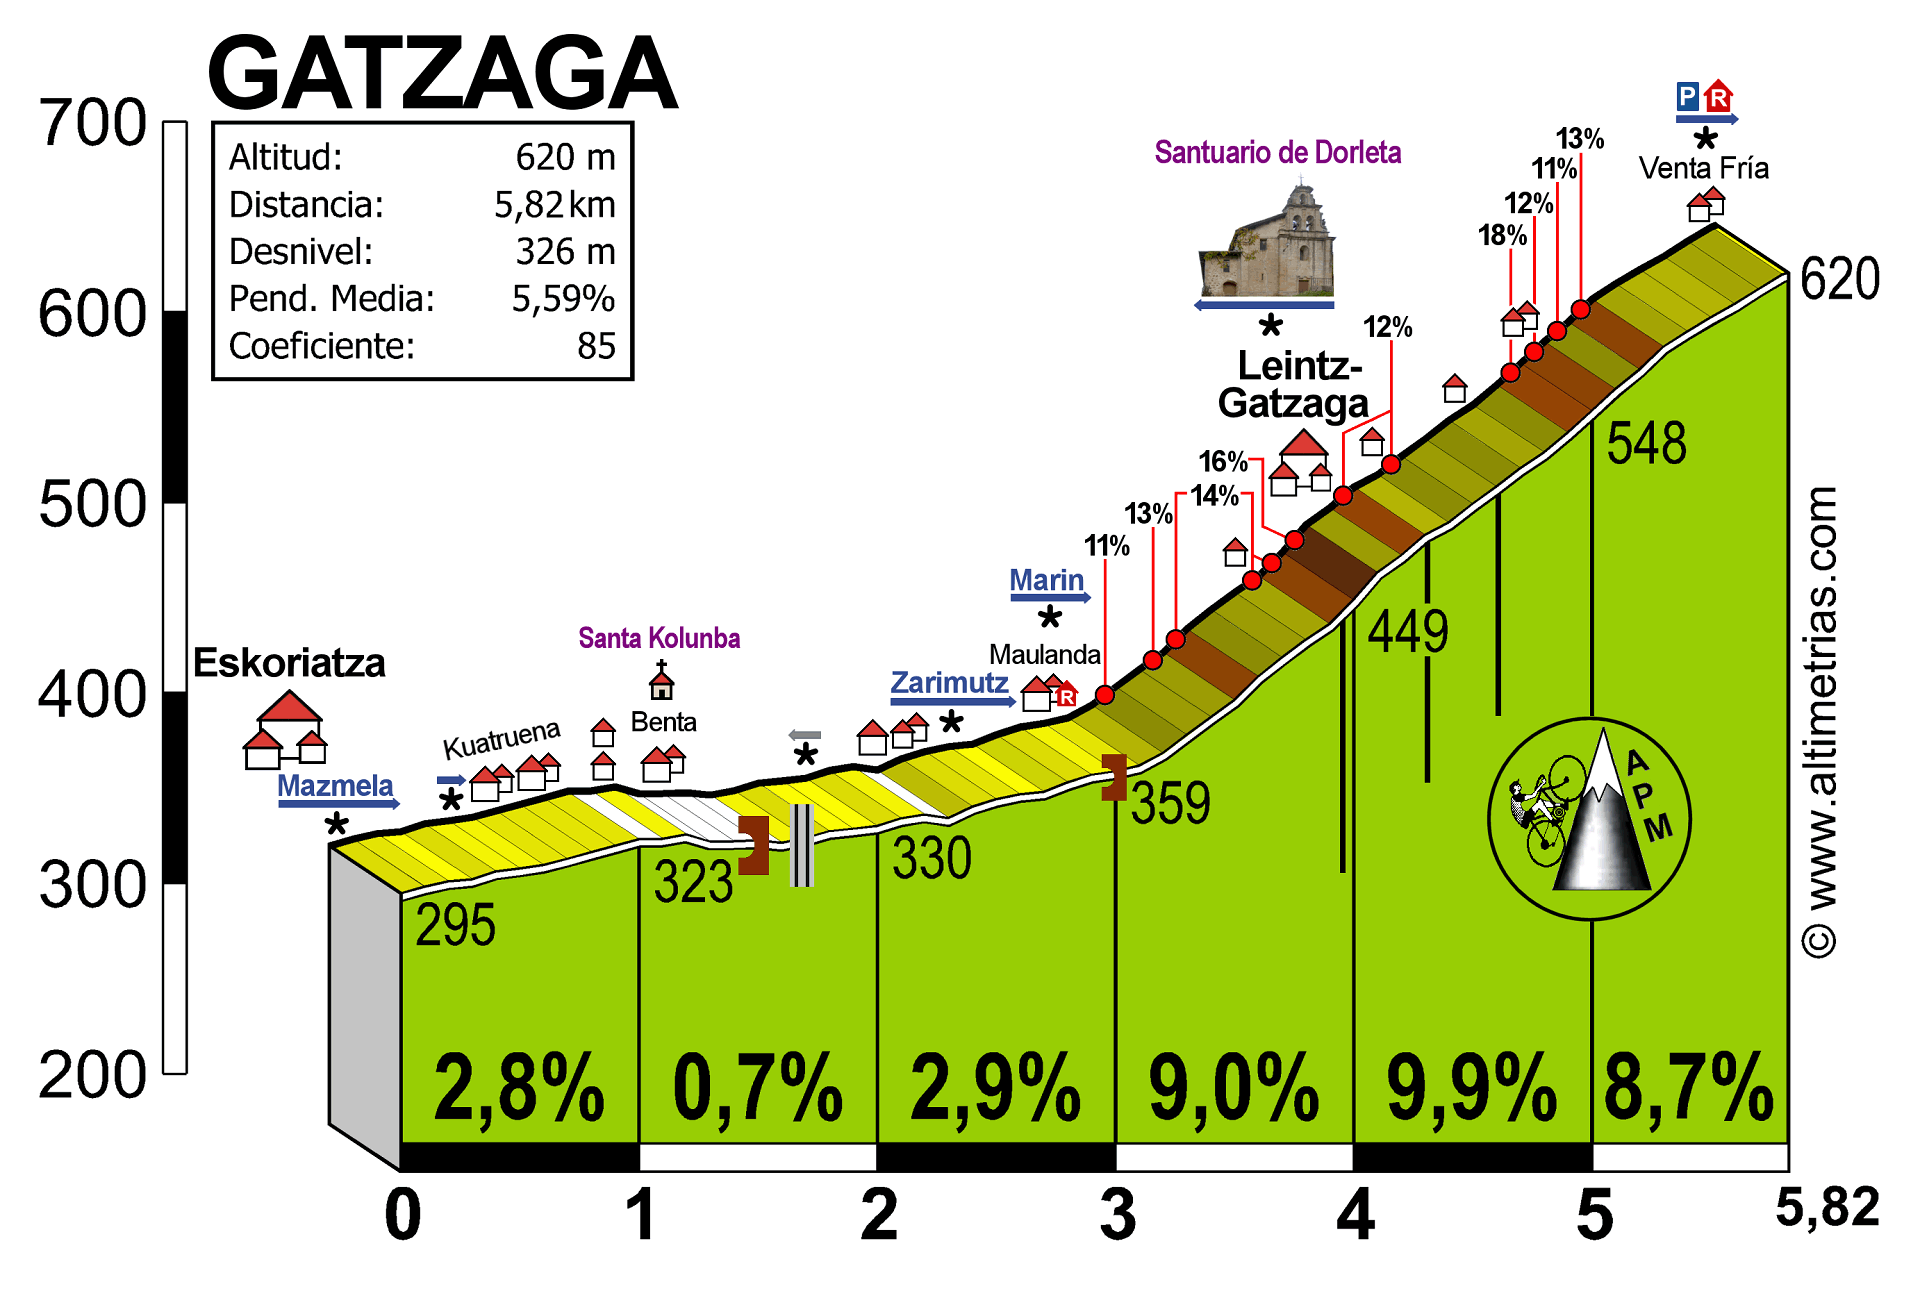 Leintz-Gatzaga / Salinas de Leniz